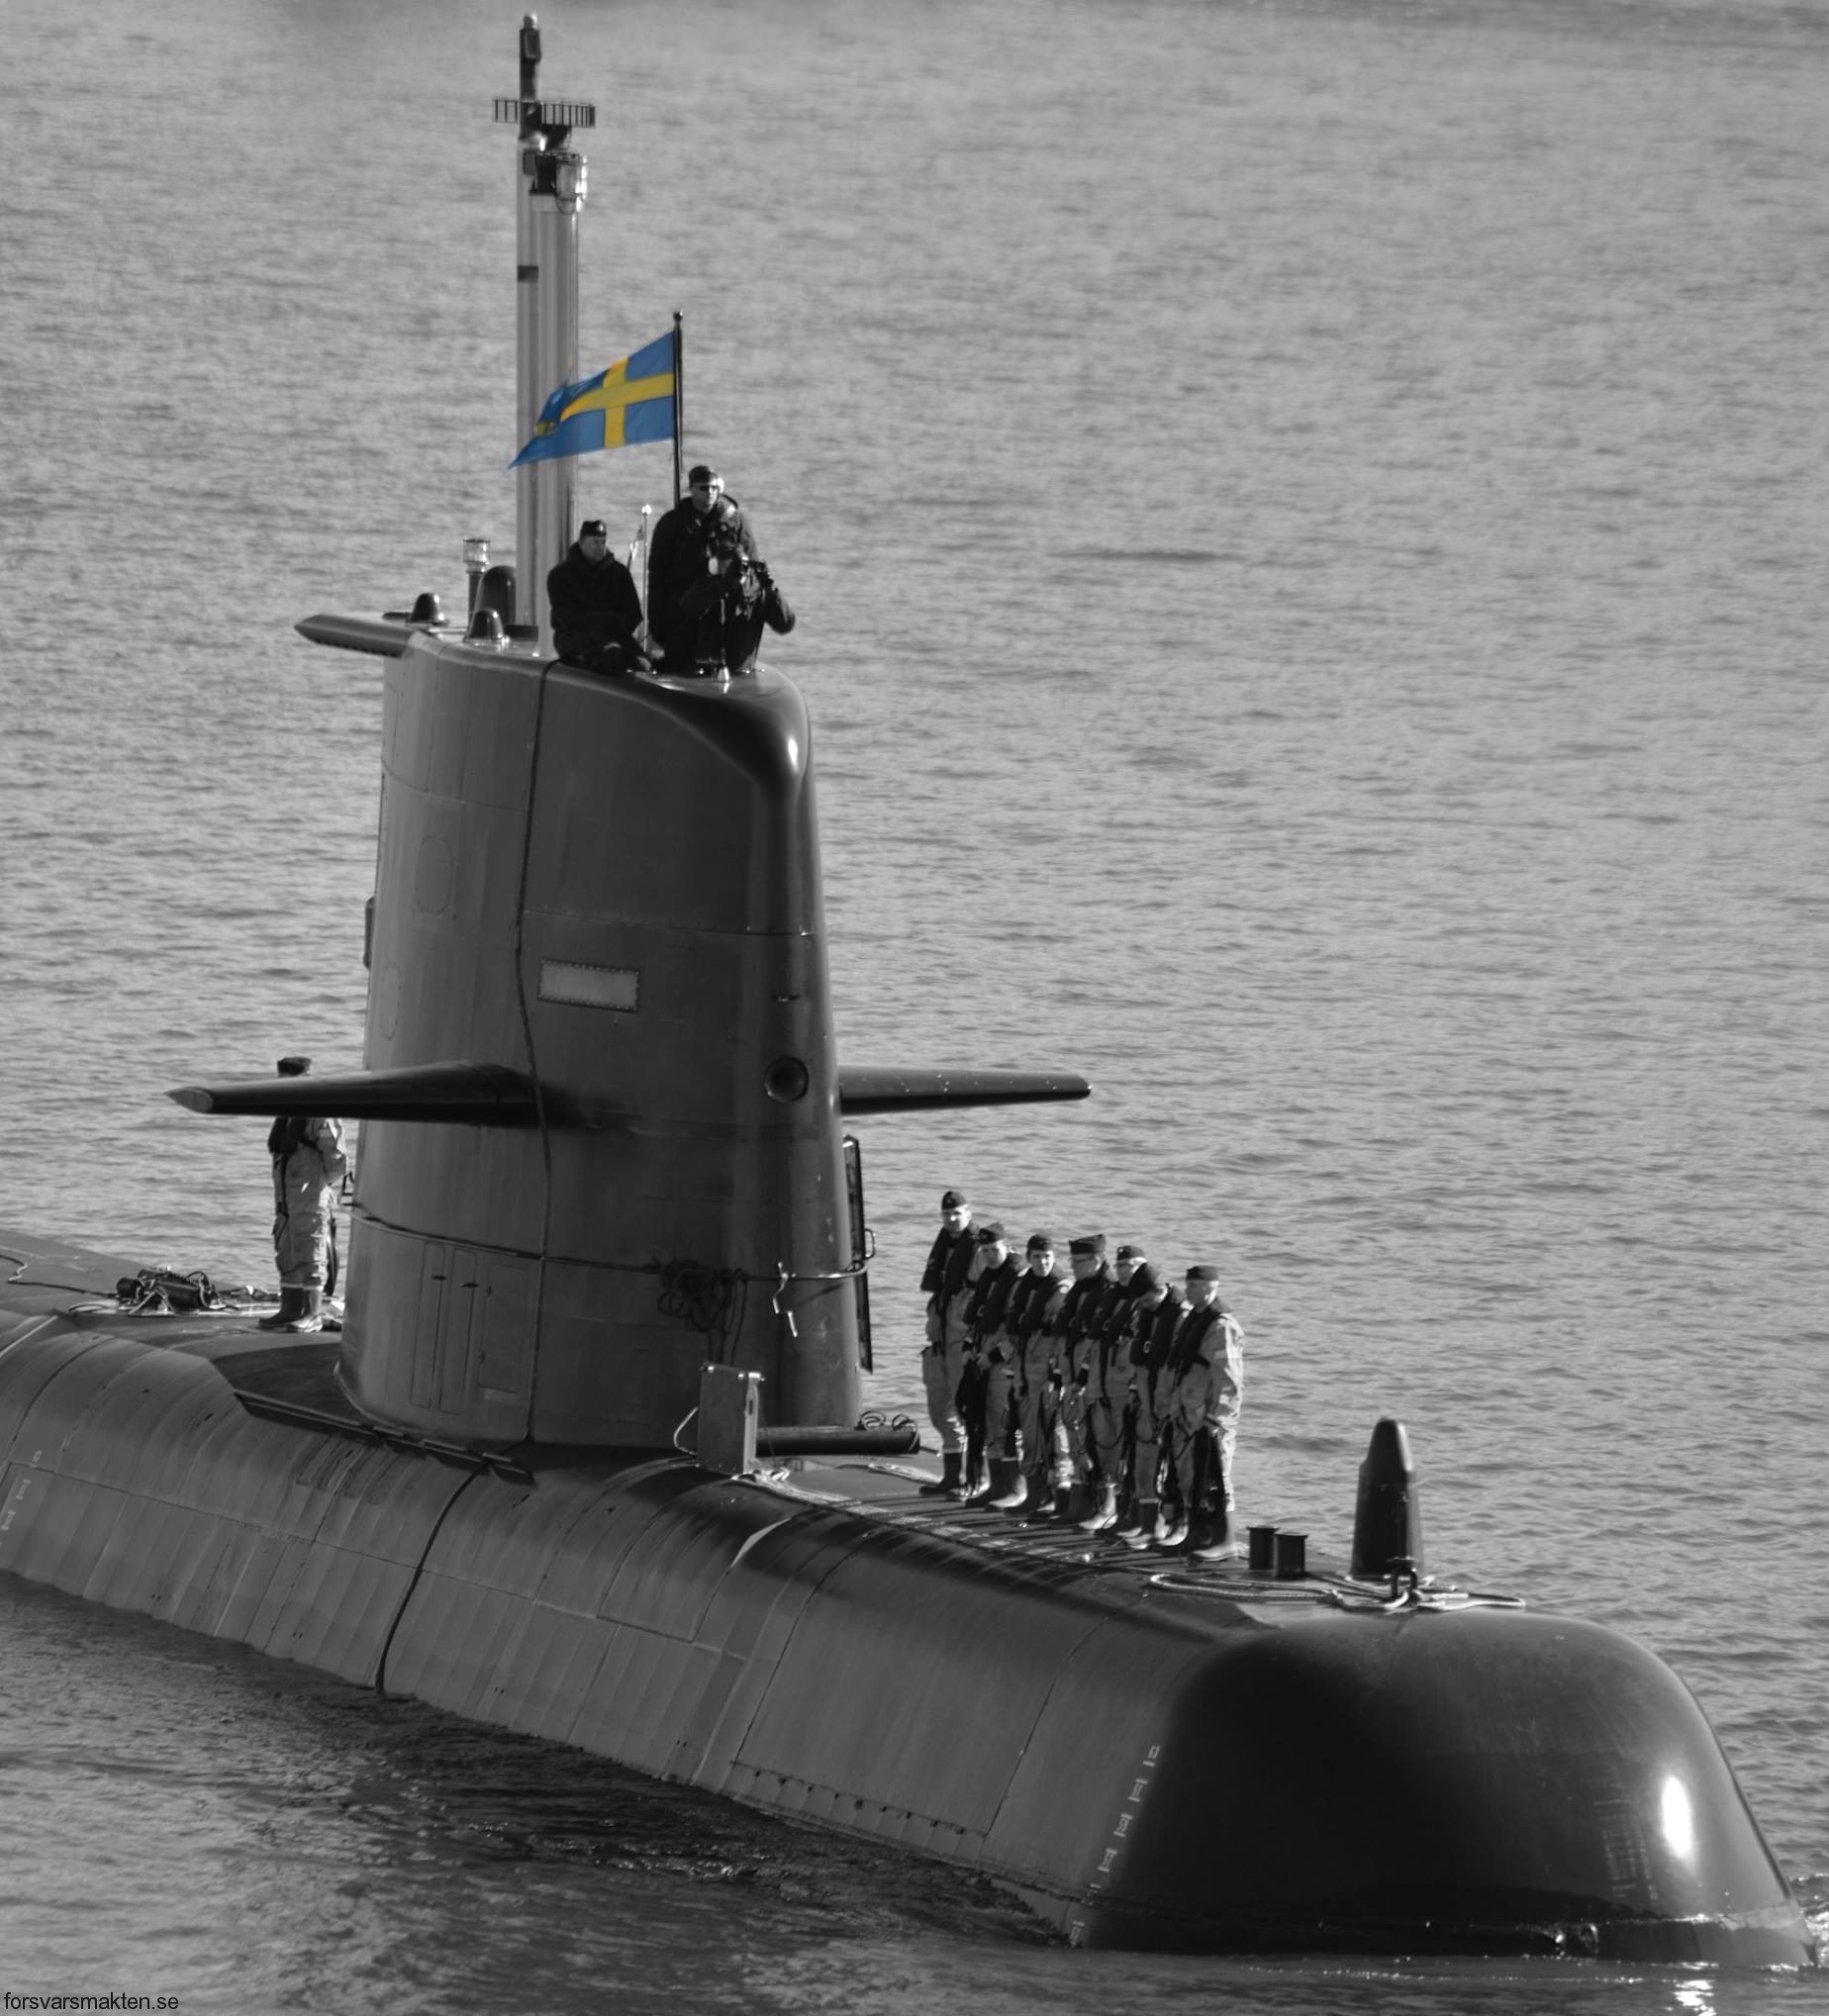 hswms hms halland hnd gotland class submarine ssk swedish navy svenska marinen försvarsmakten kockums 12